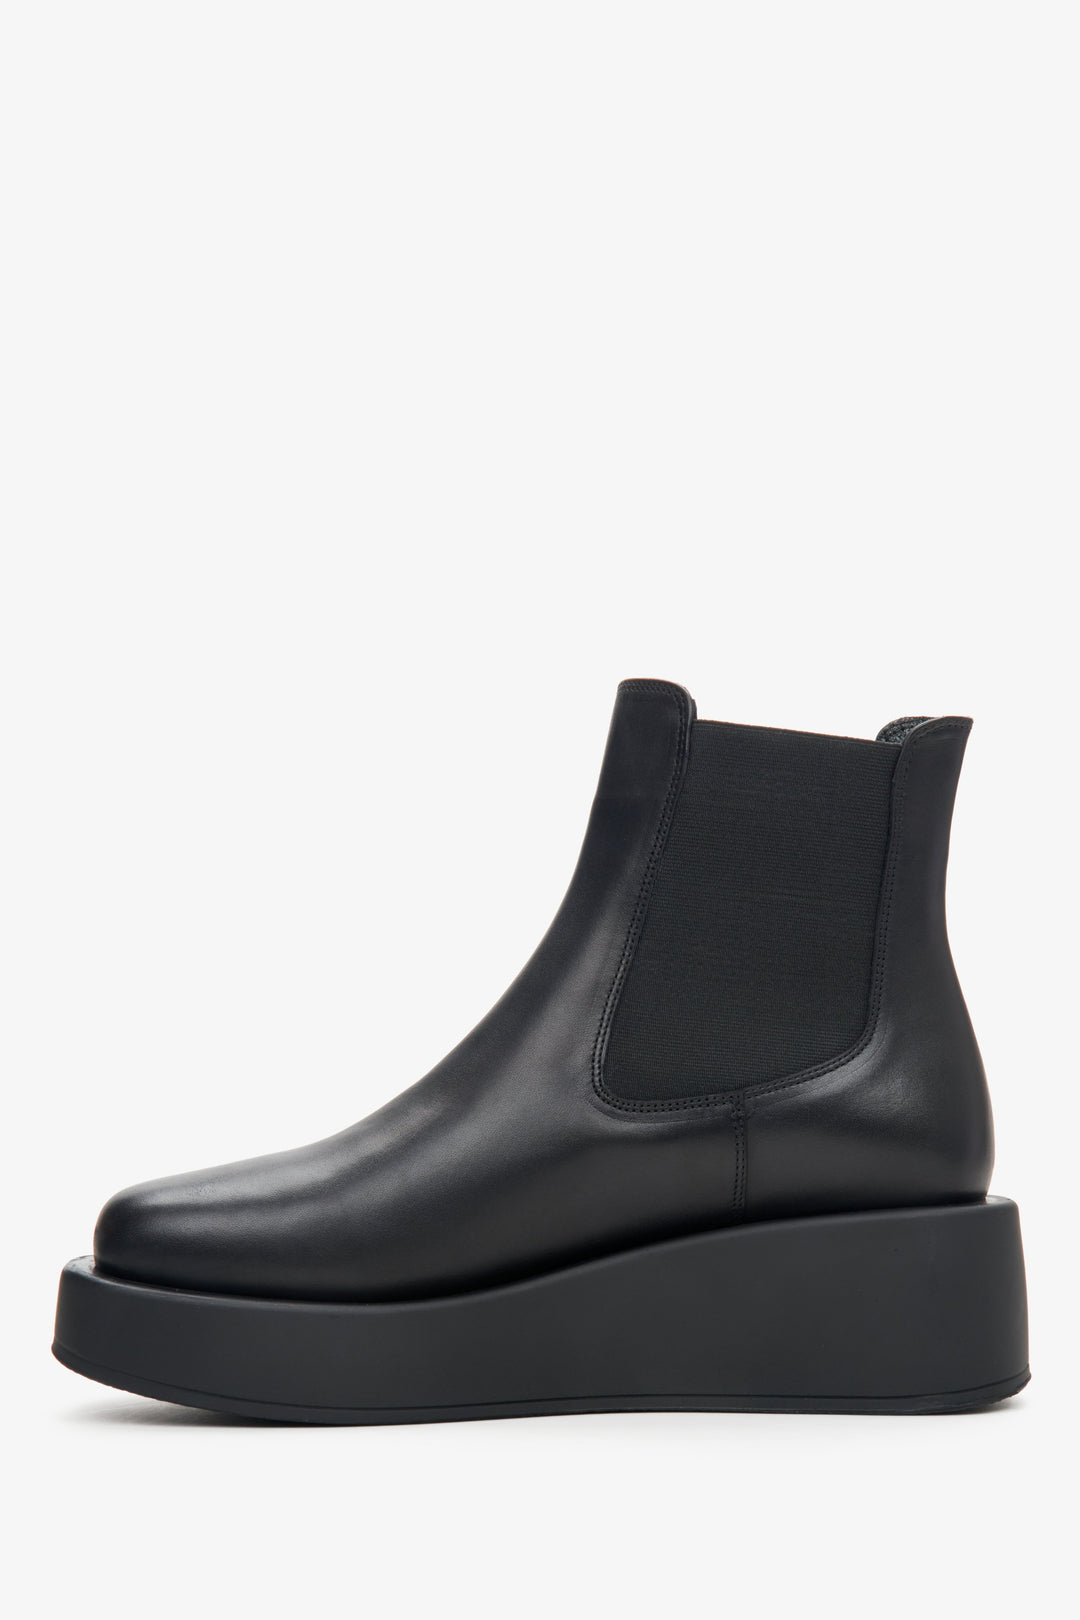 Damskie botki na platformie ze skóry naturalnej w kolorze czarnym marki Estro - profil buta.